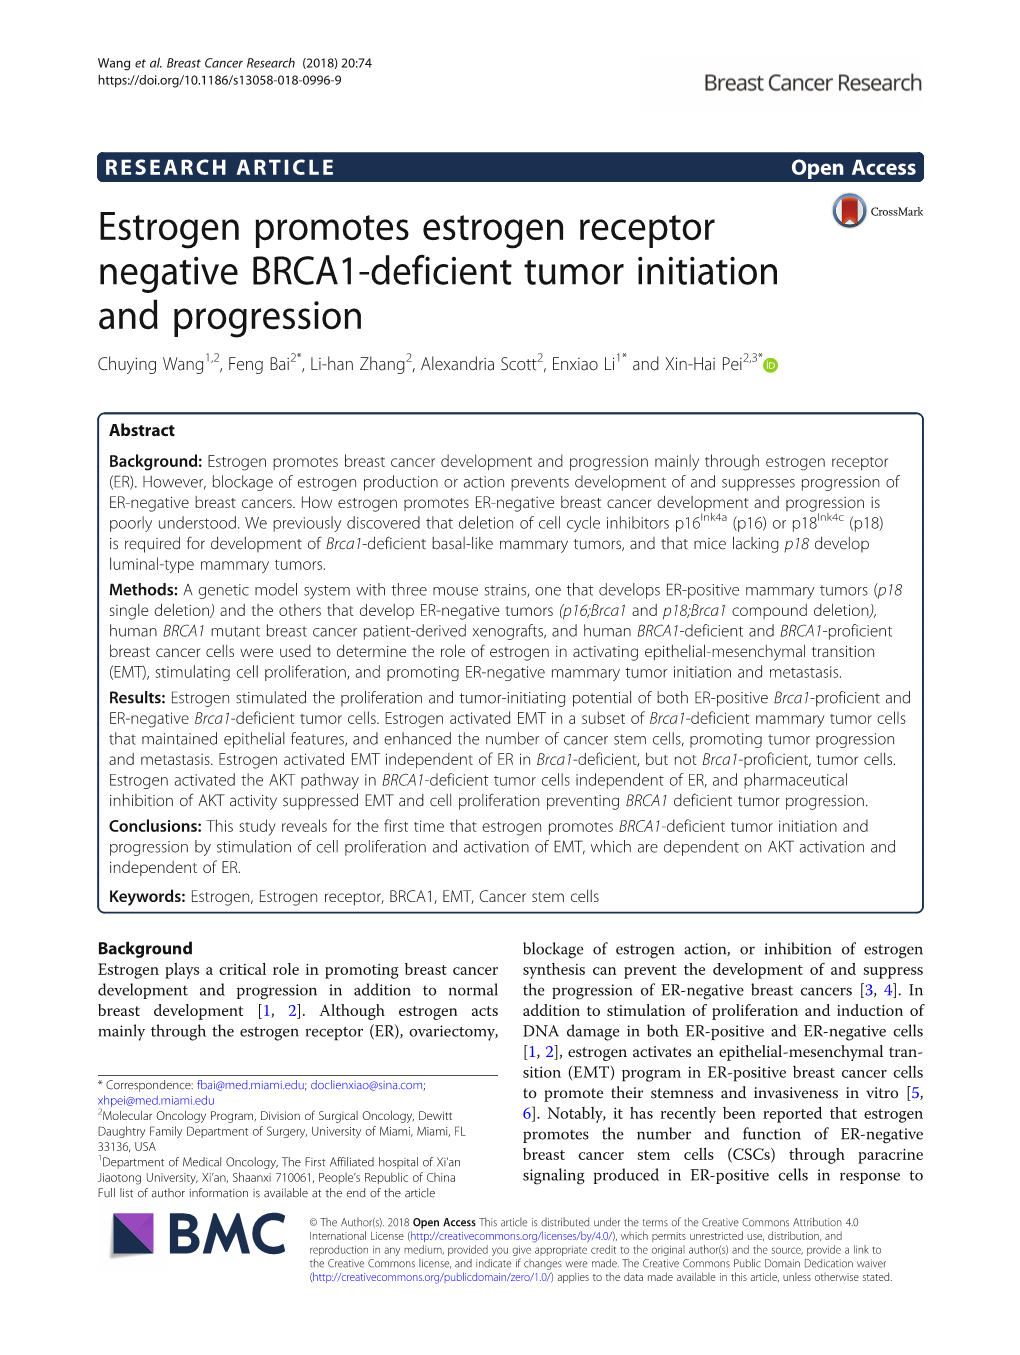 Estrogen Promotes Estrogen Receptor Negative BRCA1-Deficient Tumor